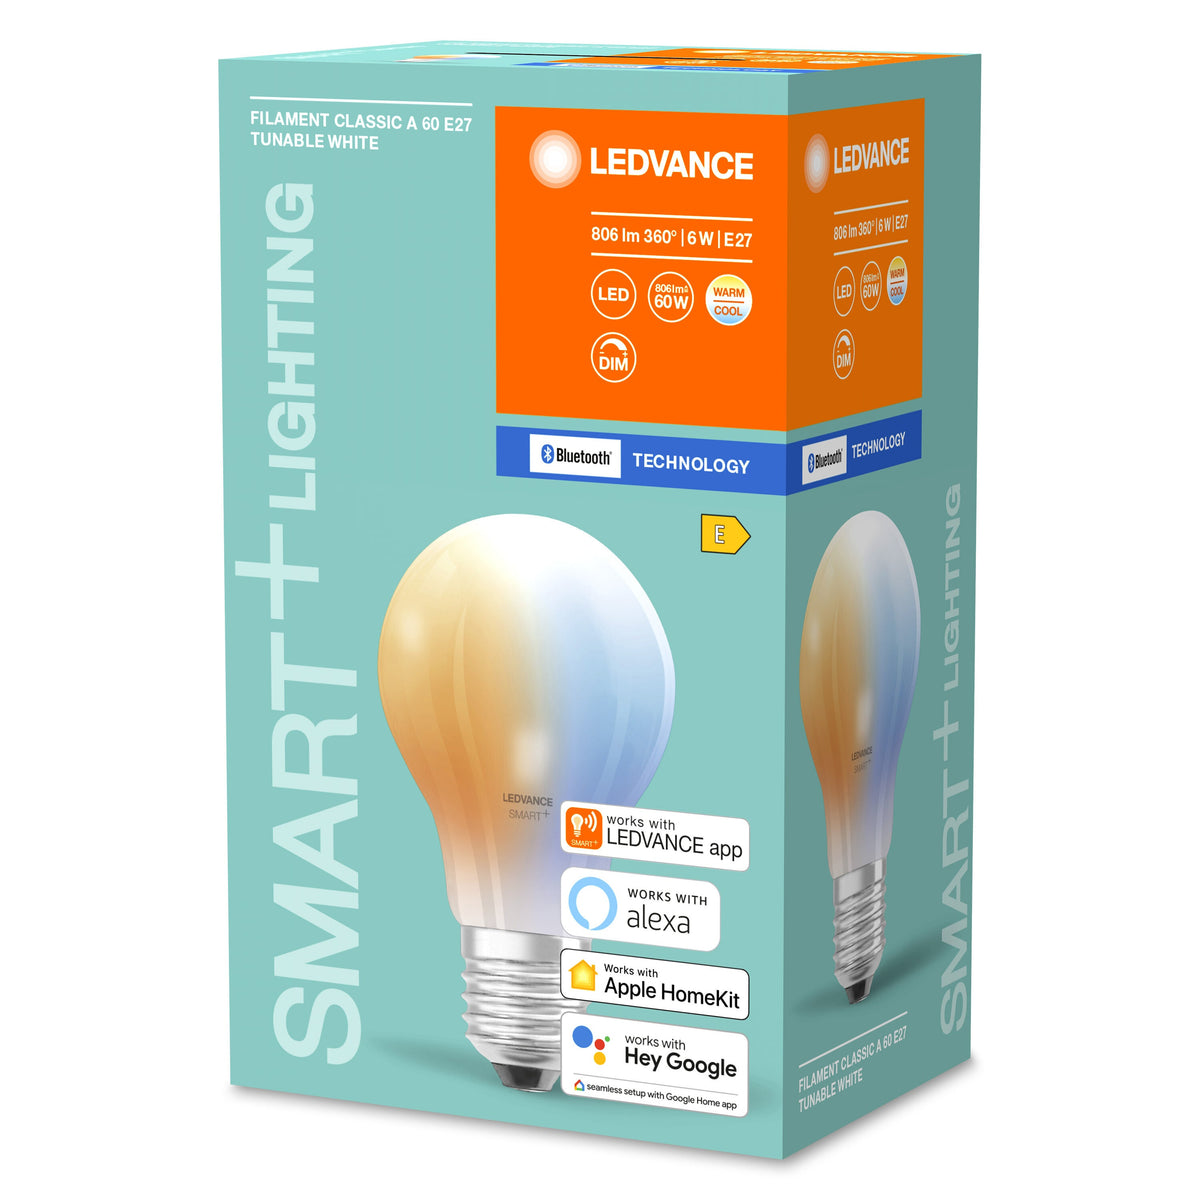 Lampada LED LEDVANCE Smart con tecnologia Bluetooth in vetro, attacco E27, dimmerabile, colore della luce variabile (2700-6500K), sostituisce le lampade a incandescenza con 60 W, SMART+ BT Classic Tunable White, confezione da 1